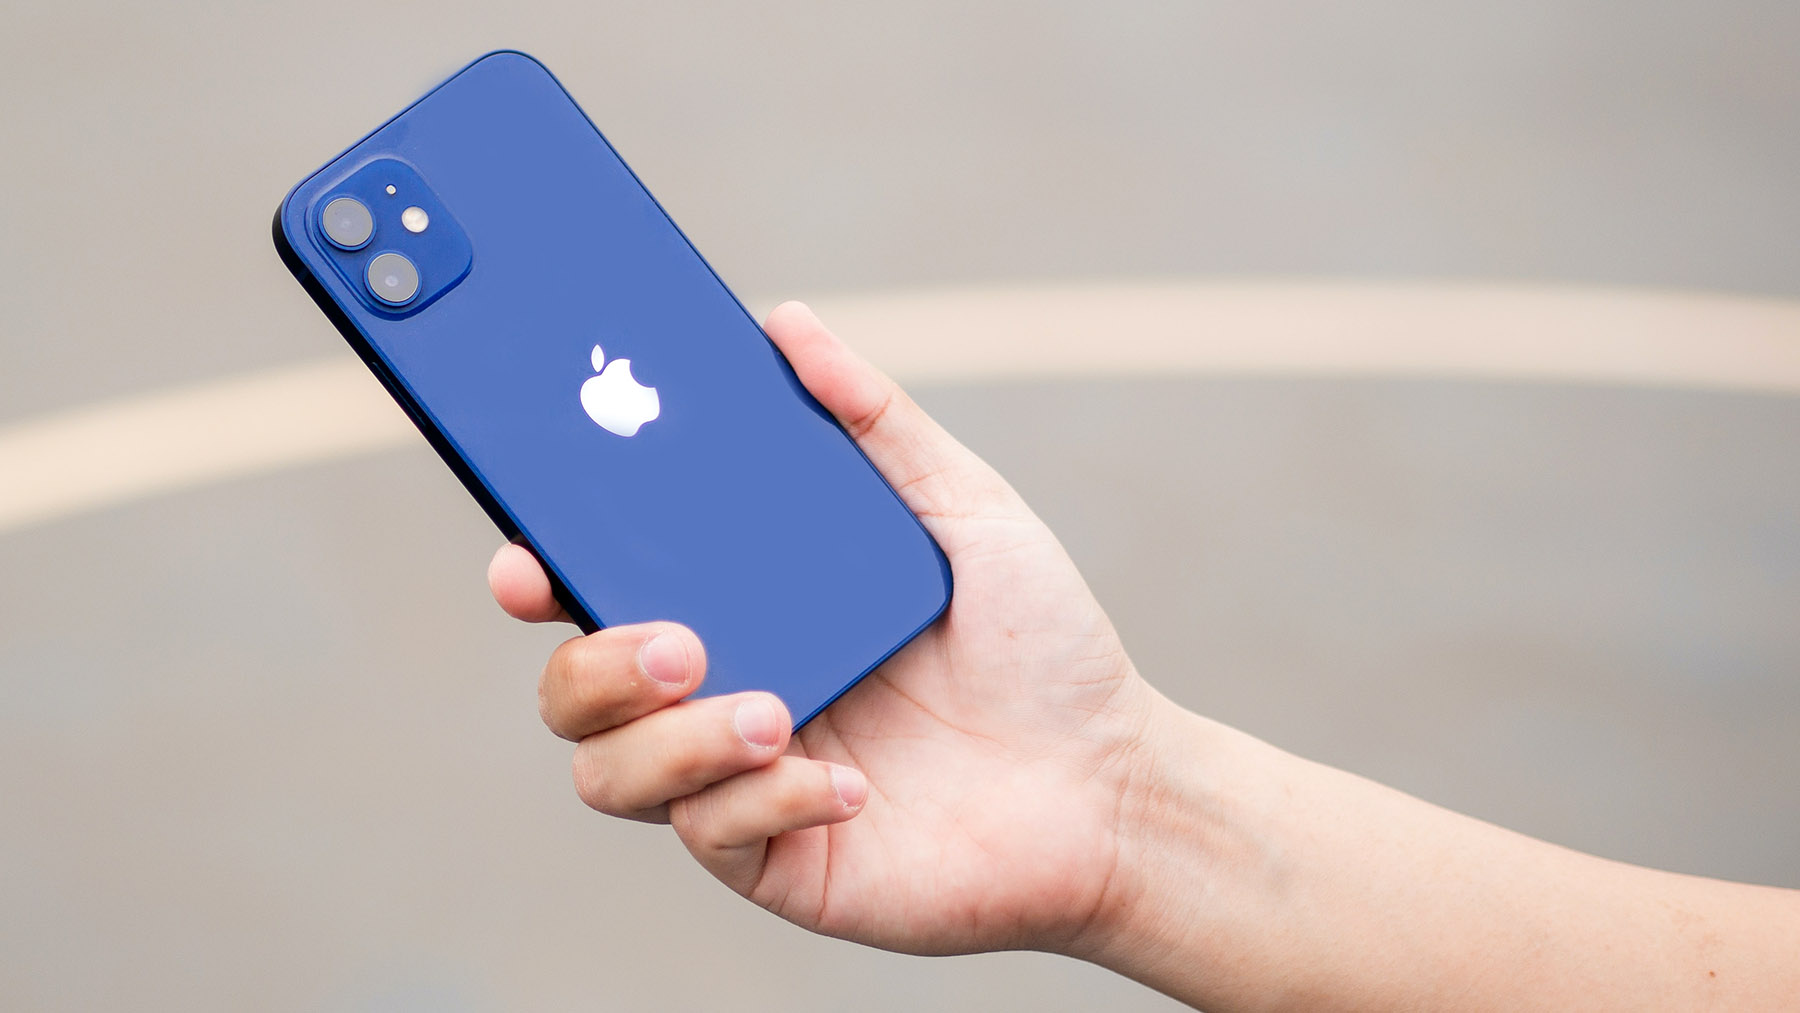 Во Франции временно запретили продажи iPhone 12 из-за повышенного излучения  | Forbes.ru